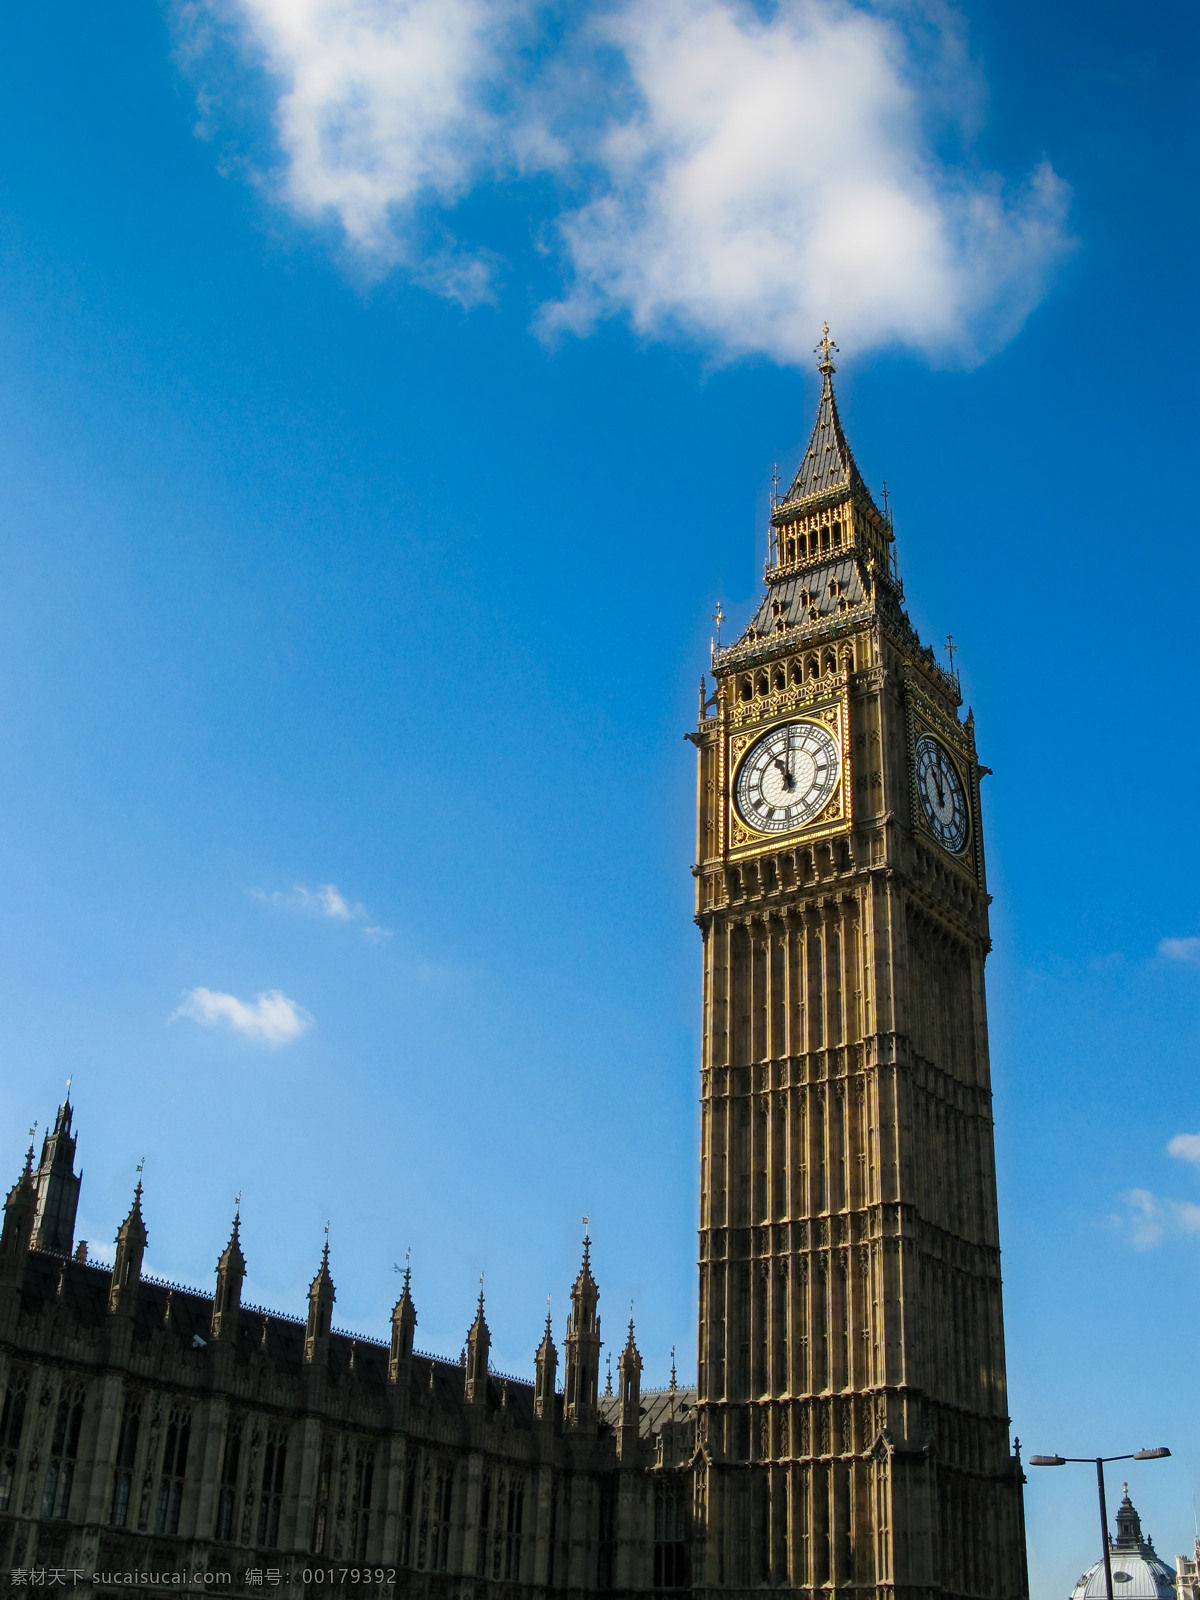 英国议会大楼 英国大本钟 英国建筑 蓝天 白云 英国风景 大本钟 英国旅游 英伦风情 国外旅游 旅游摄影